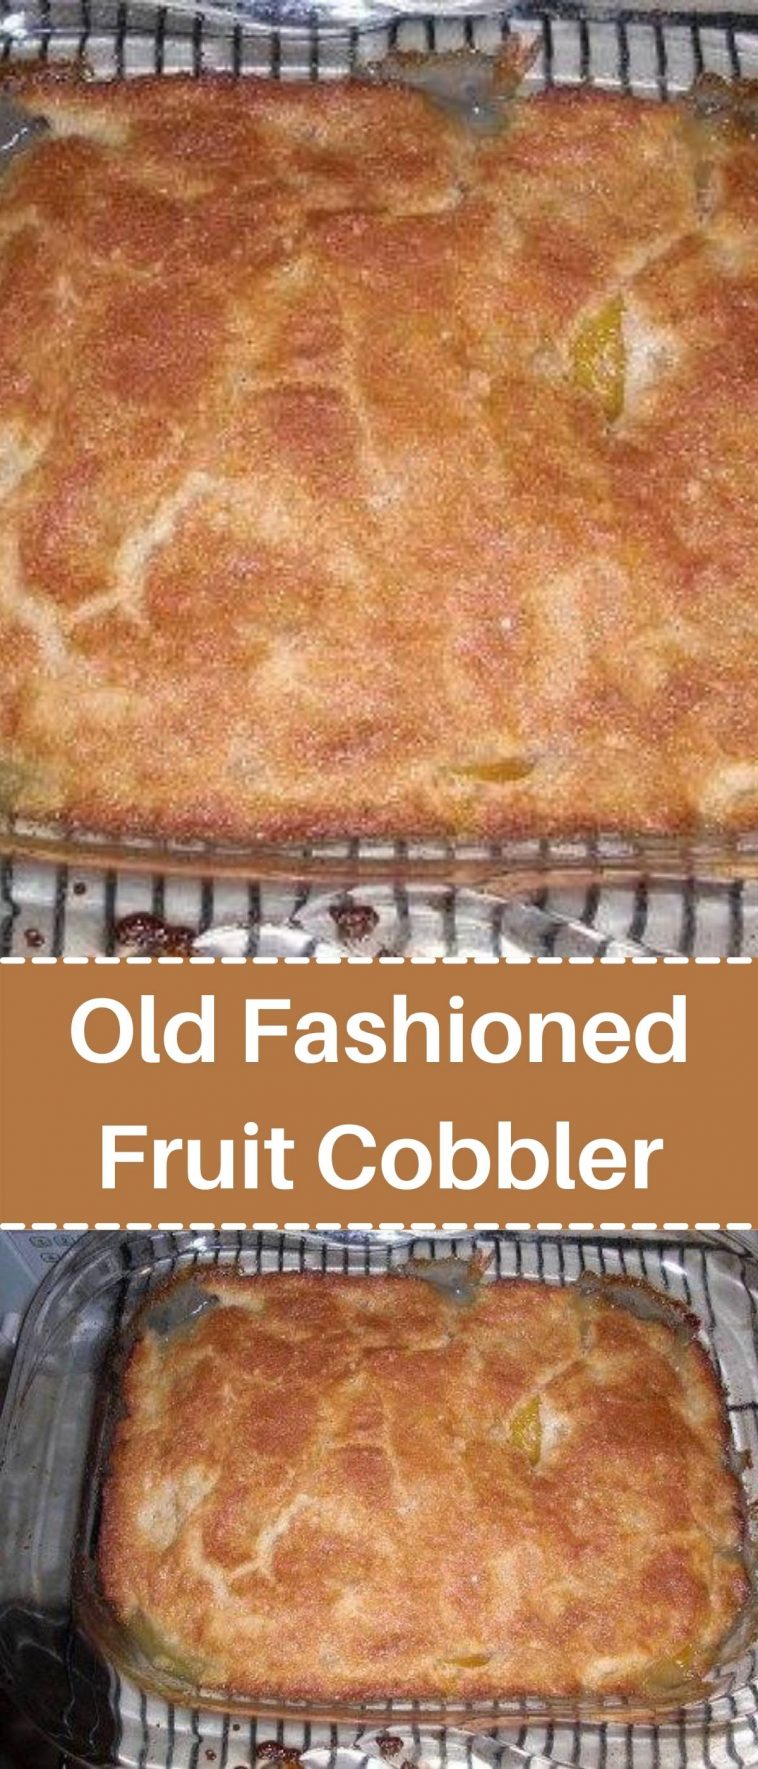 Old Fashioned Fruit Cobbler